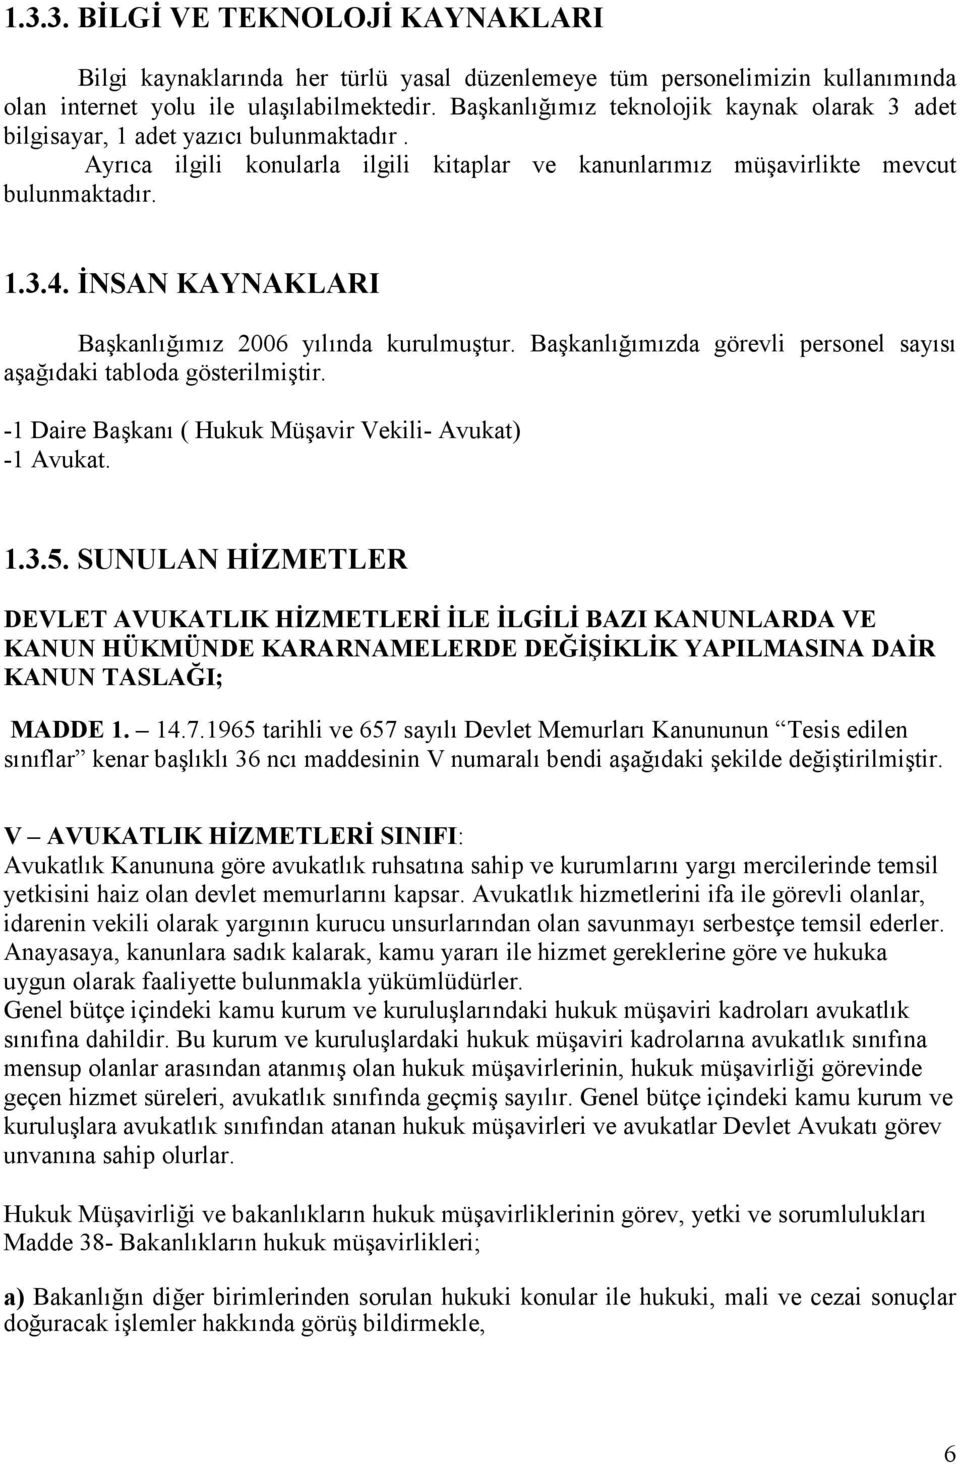 ĐNSAN KAYNAKLARI Başkanlığımız 2006 yılında kurulmuştur. Başkanlığımızda görevli personel sayısı aşağıdaki tabloda gösterilmiştir. -1 Daire Başkanı ( Hukuk Müşavir Vekili- Avukat) -1 Avukat. 1.3.5.